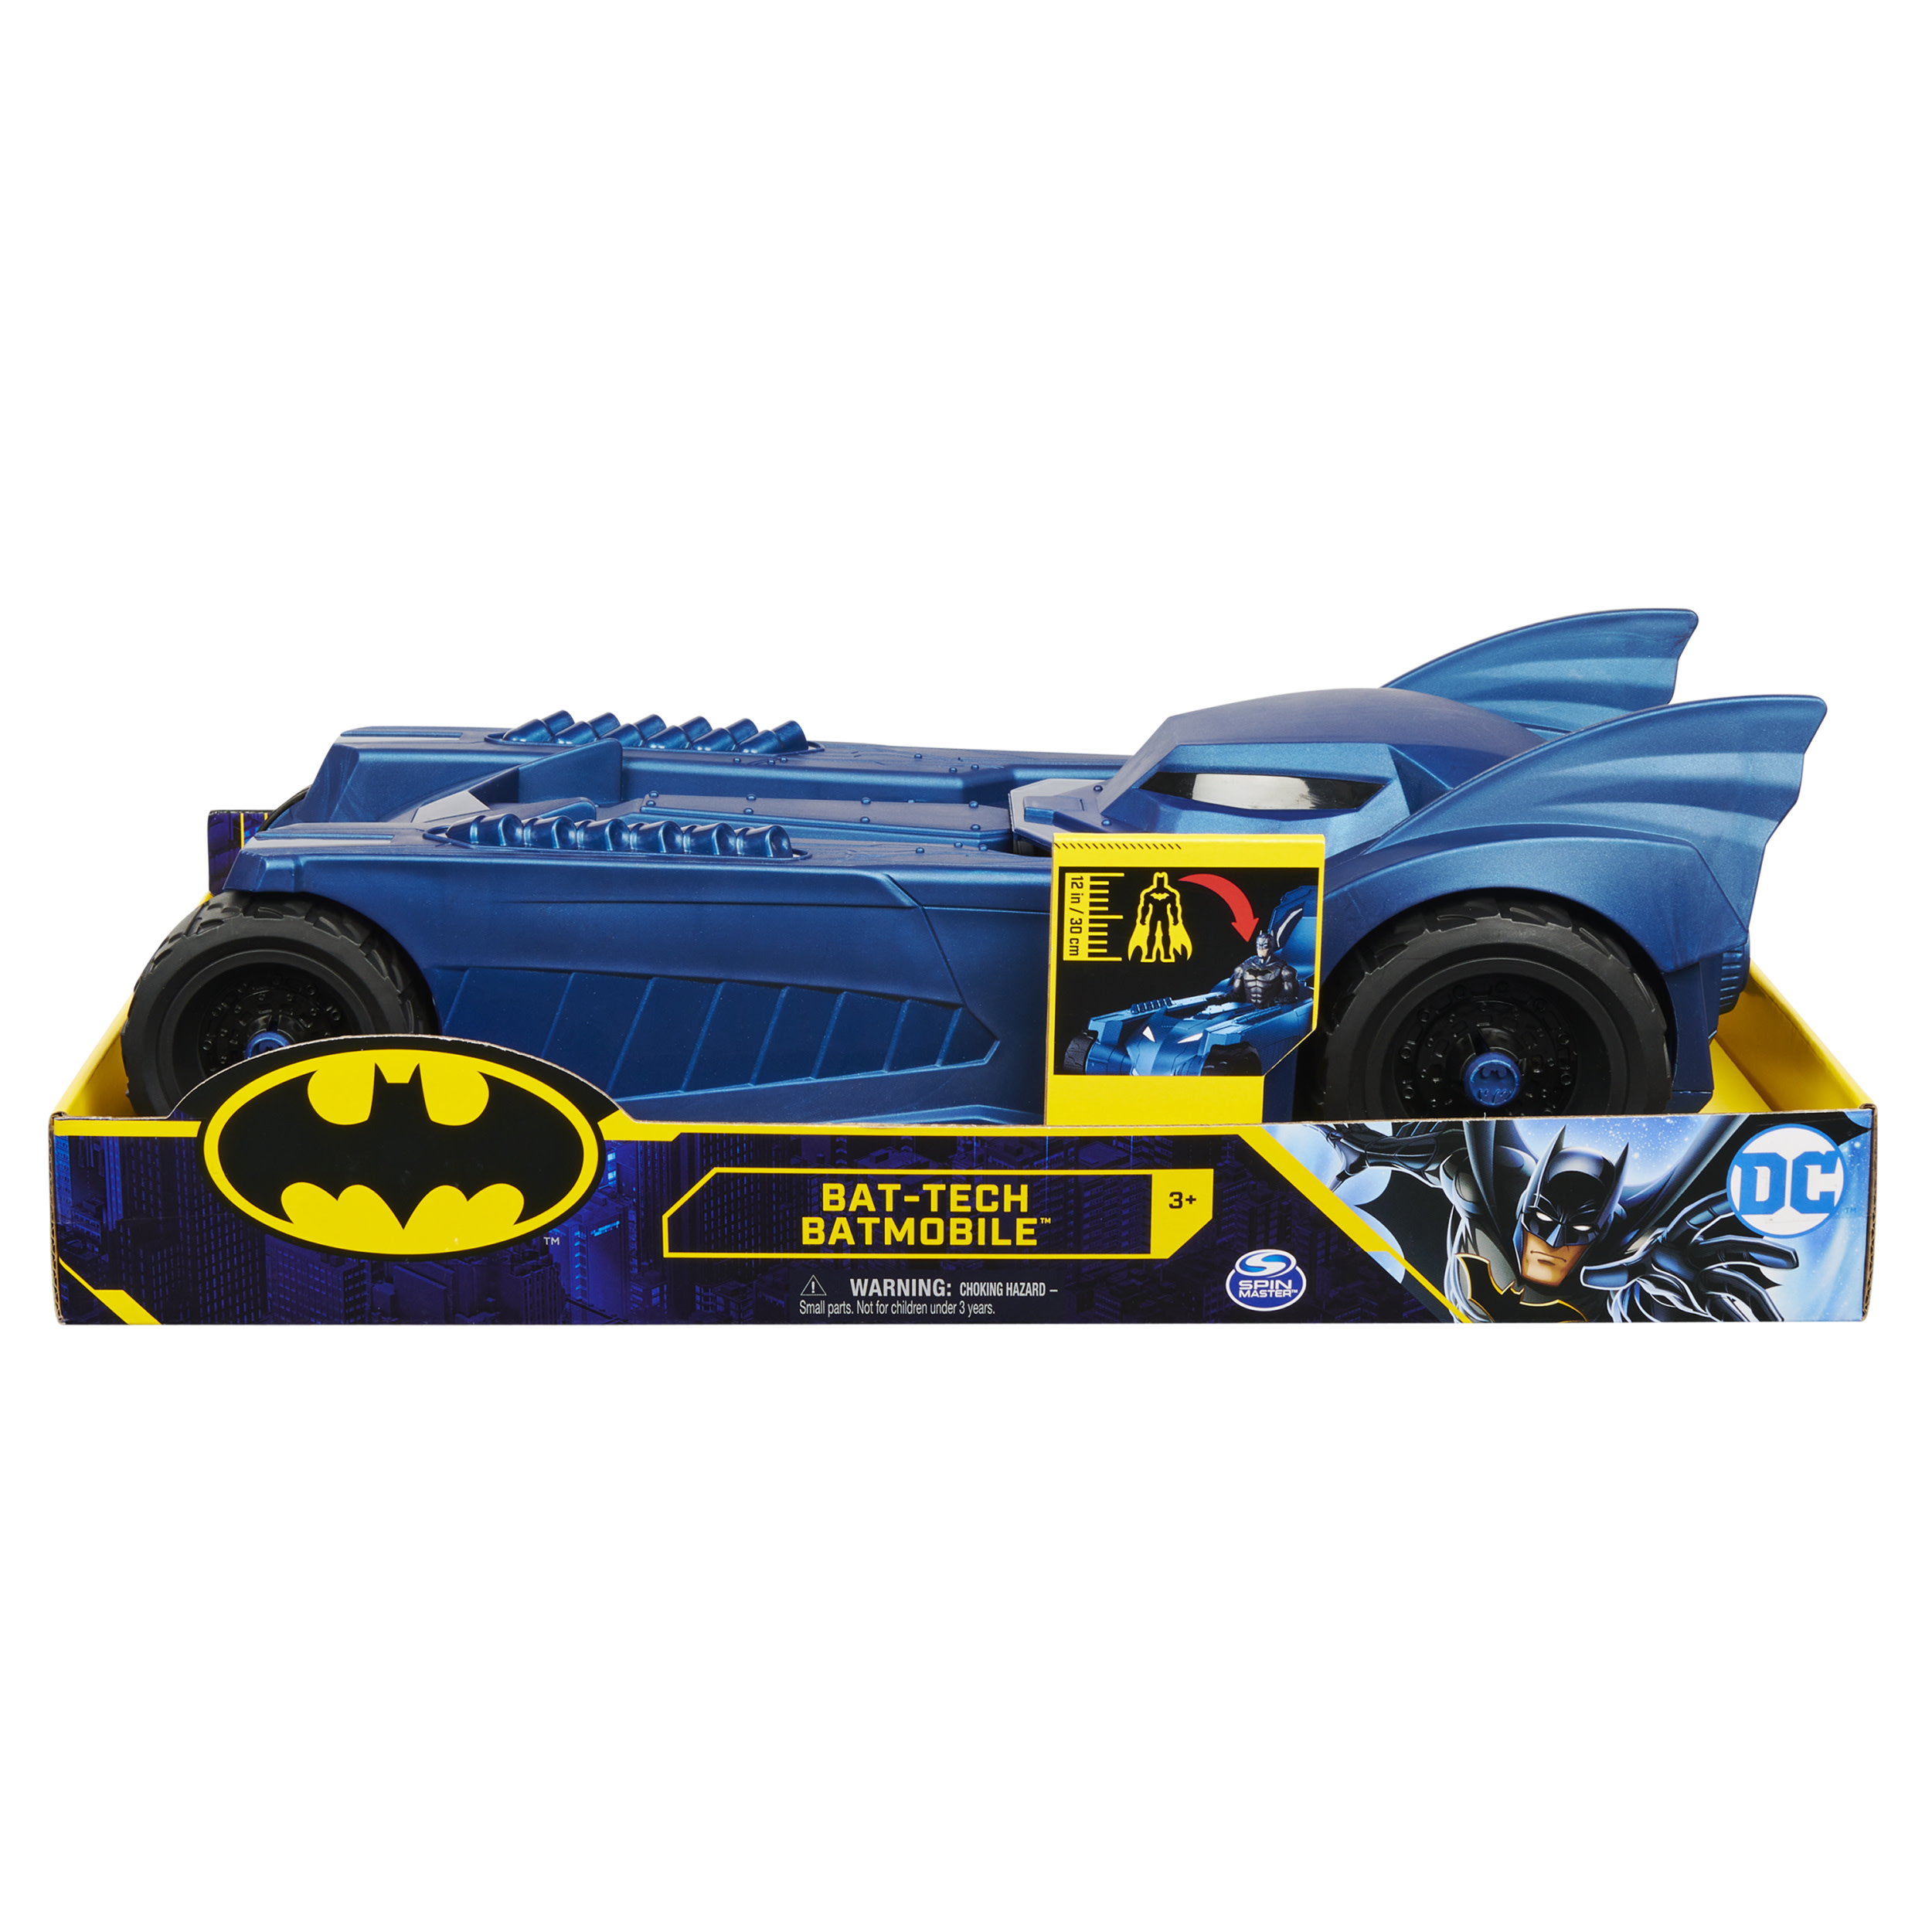 Купить Игрушечная машинка Spin Master Batmen Бэтмобиль для фигурок 30 см 6055297,